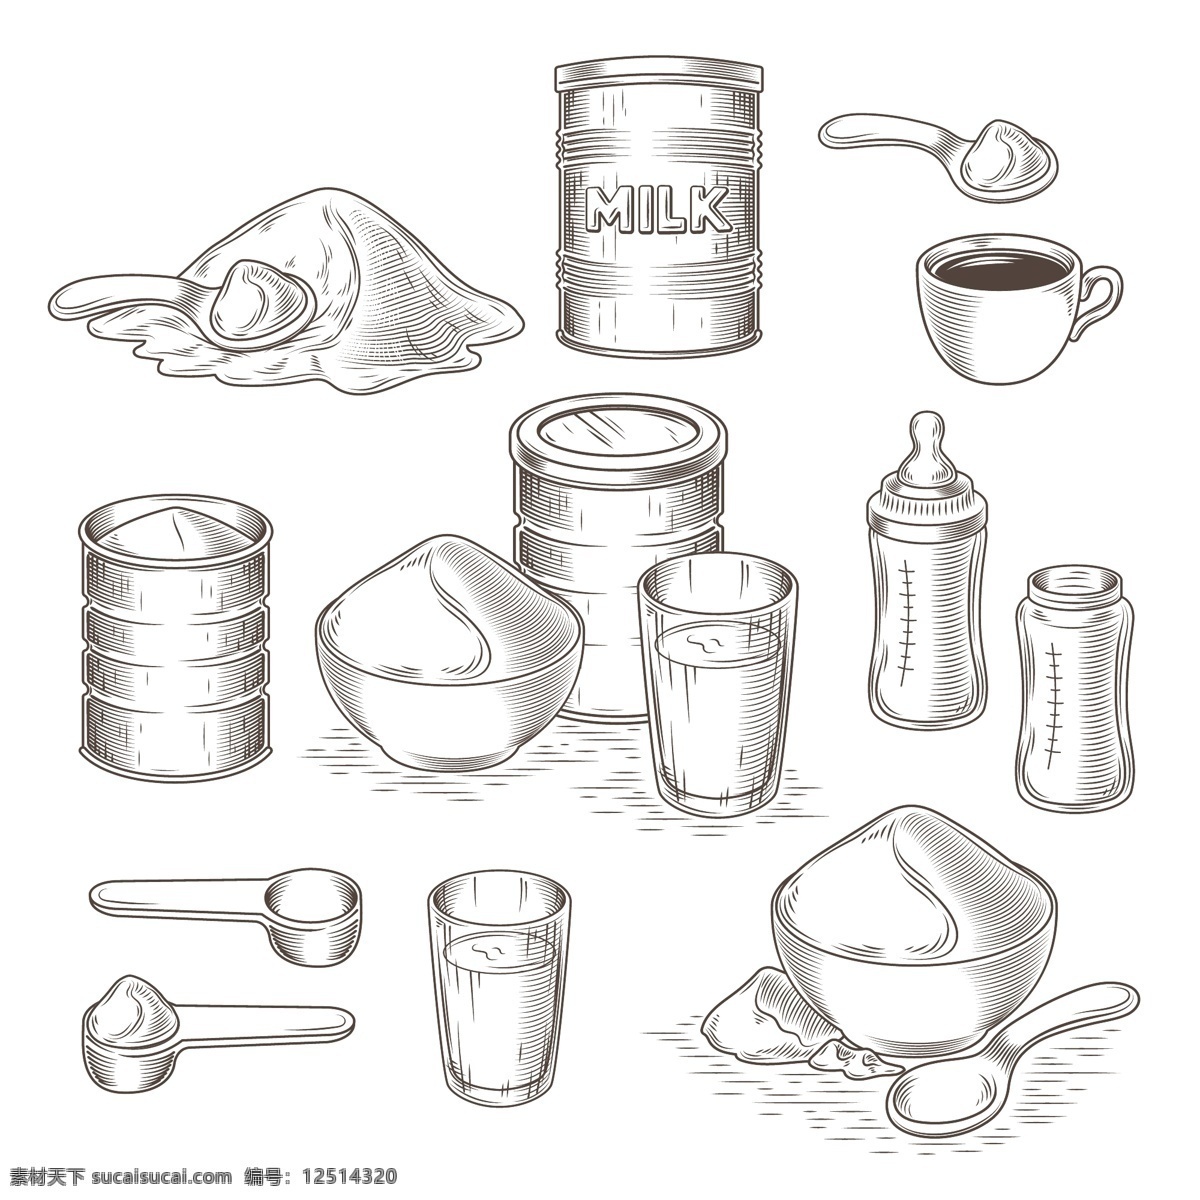 向量 组 奶粉 卡通 插画 食品 咖啡 婴儿 水 图标 线 盒 包装 茶 牛奶 咖啡杯 玻璃 饮料 杯子 有机 白色 天然 健康